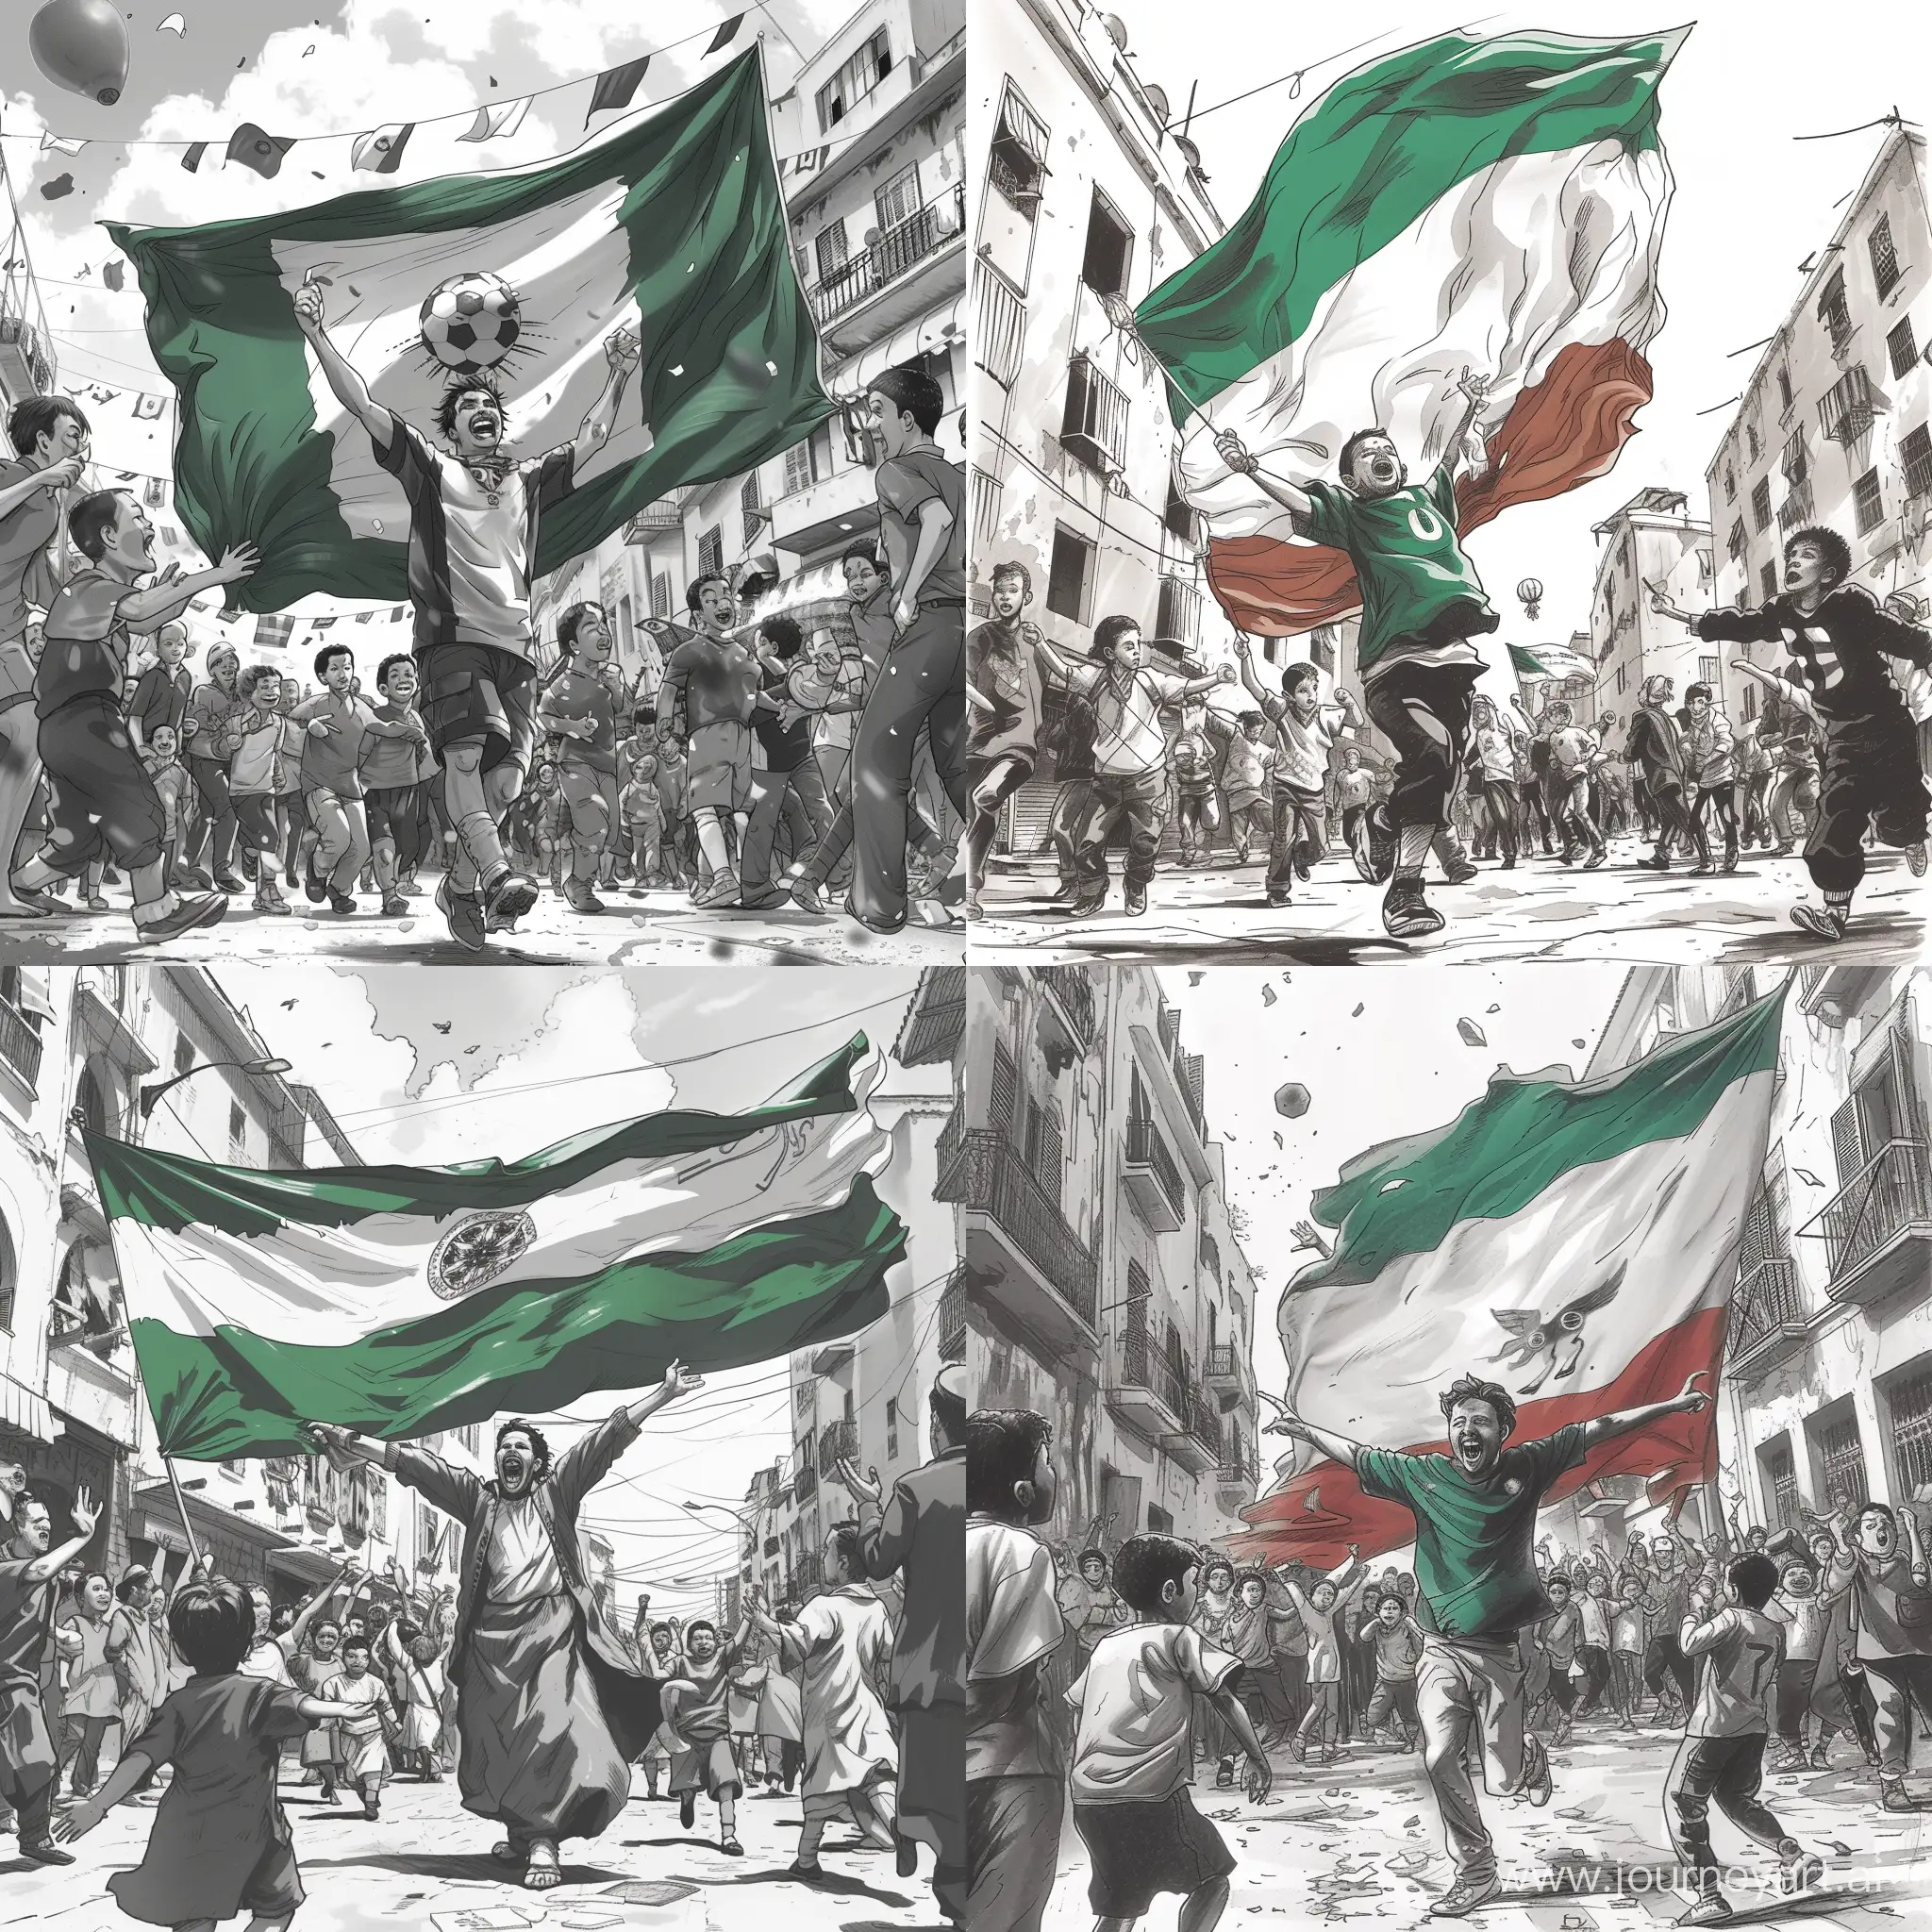 Joyful-Manga-Celebration-Algerian-Guy-Raises-National-Flag-Amidst-Street-Revelry